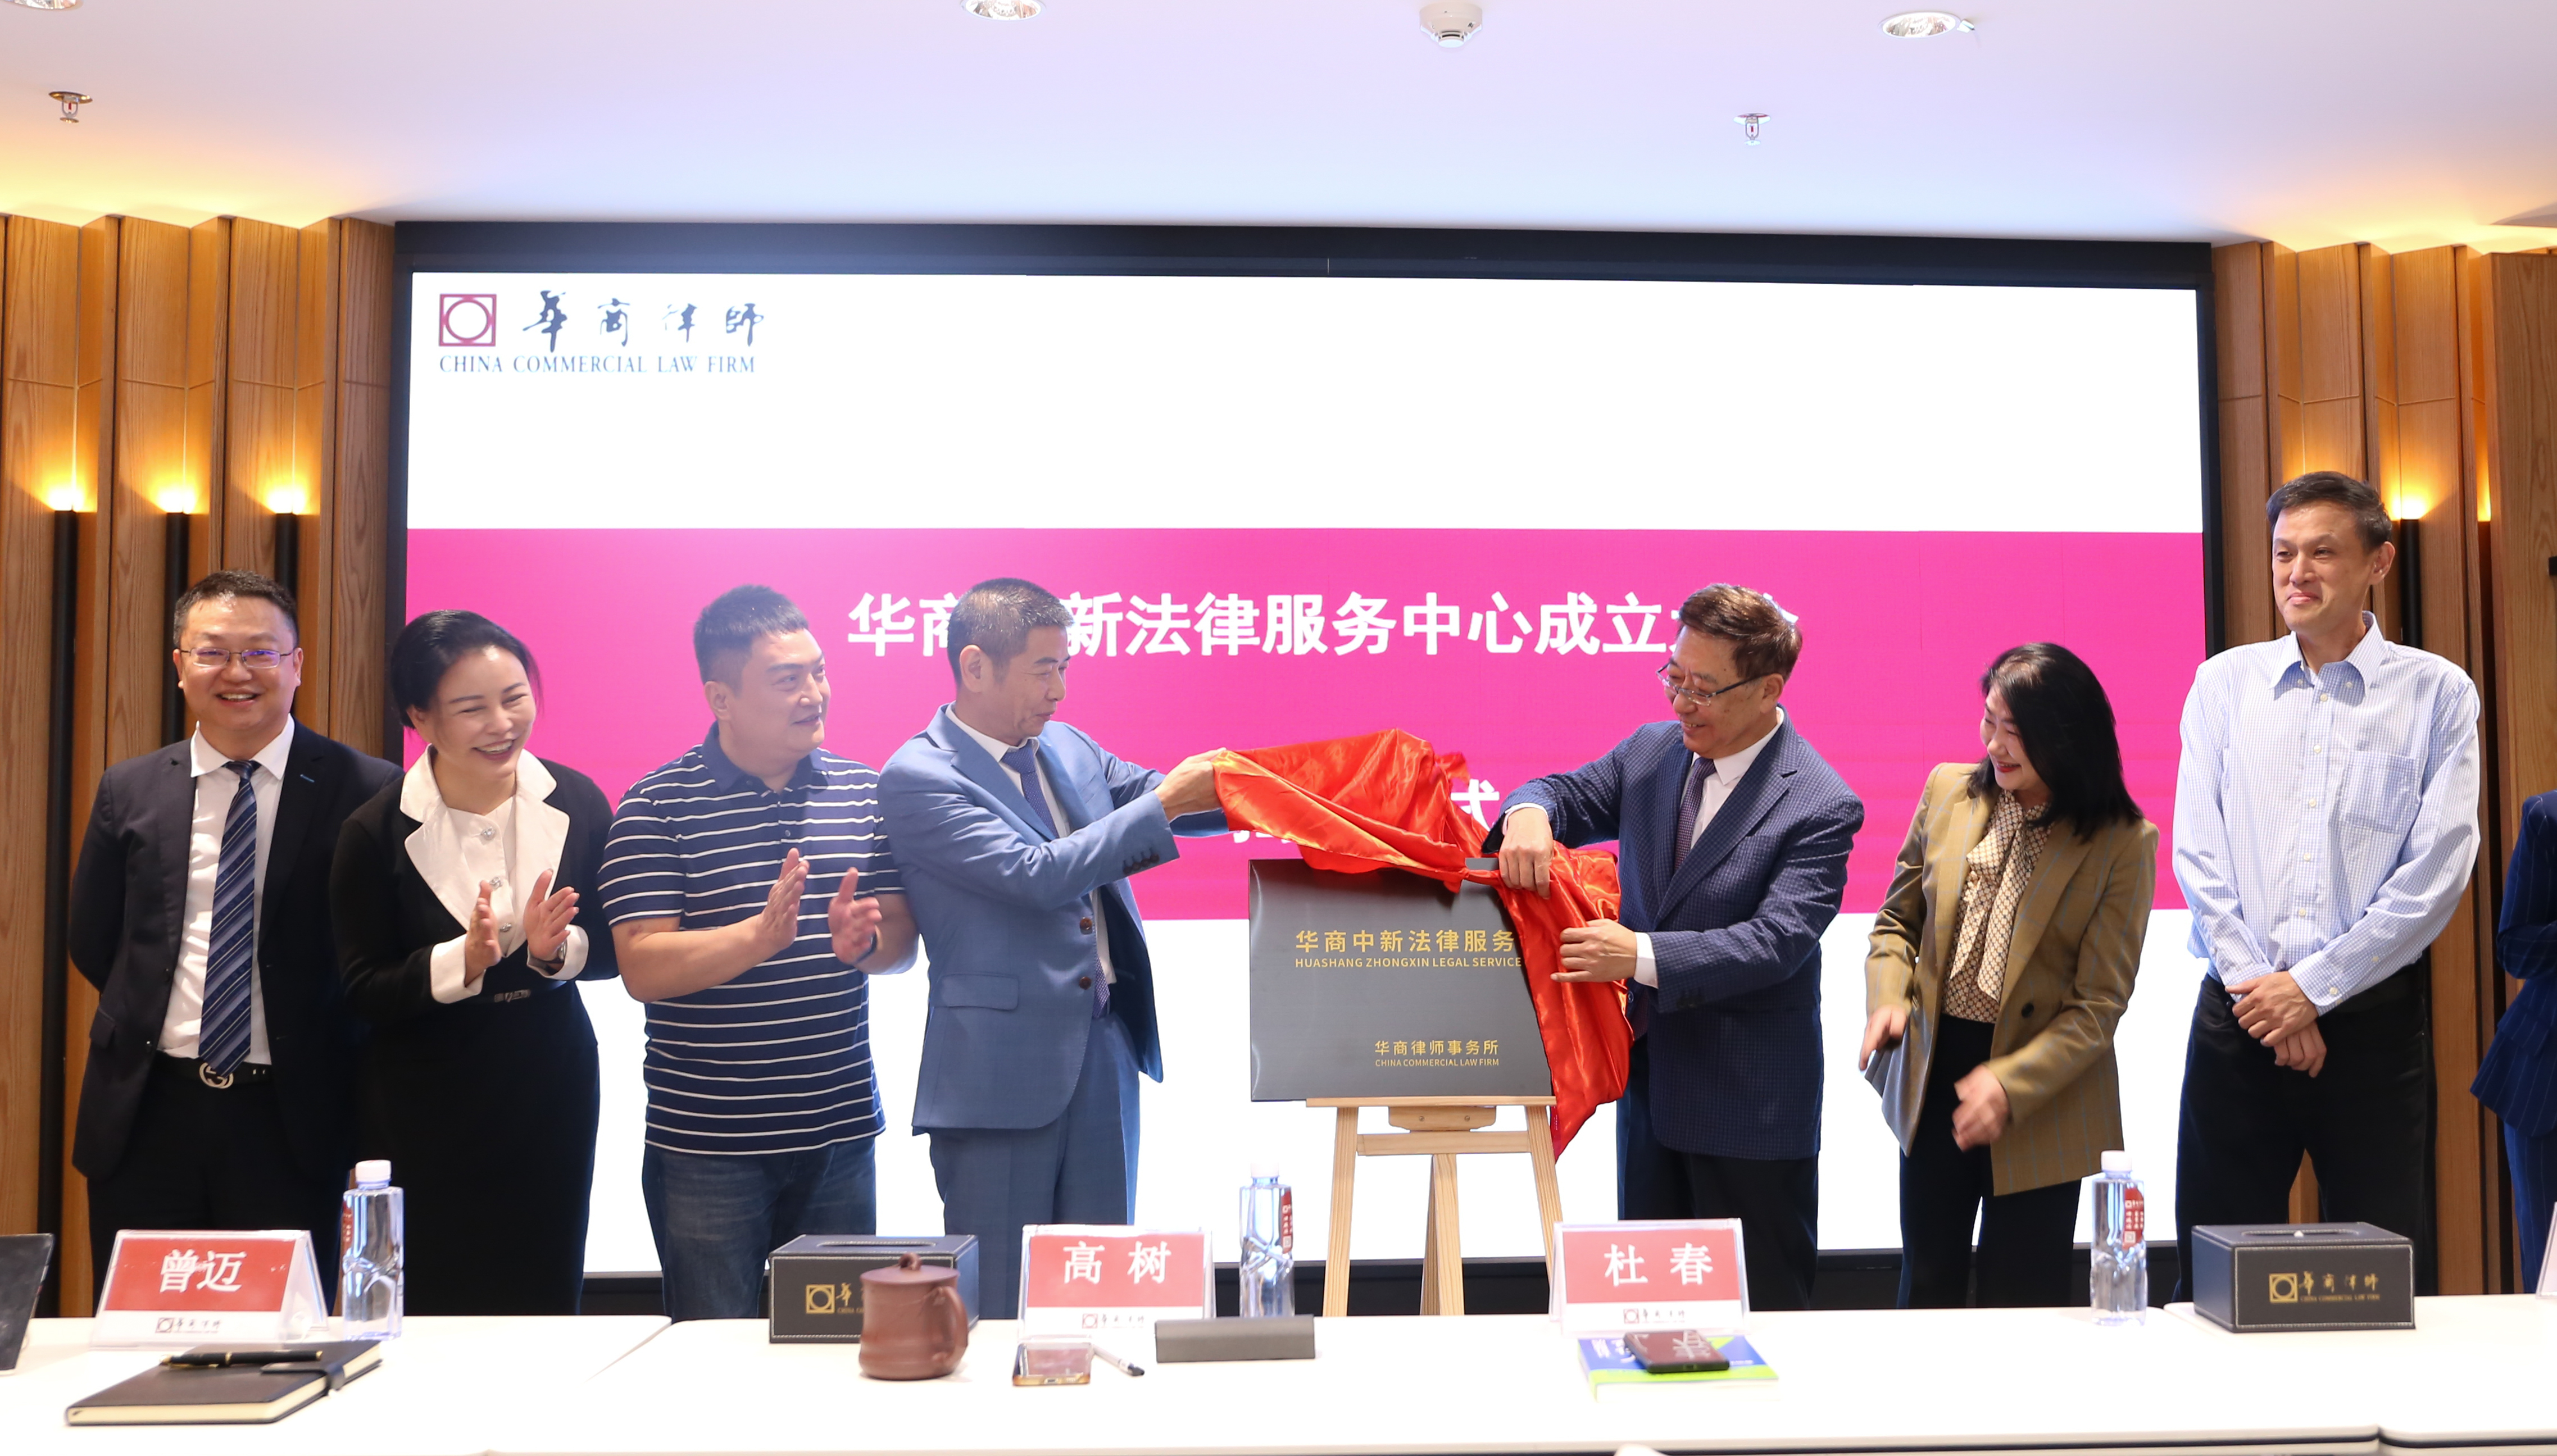 打通新加坡与中国的法律服务市场 华商律所牵头成立中新法律服务中心